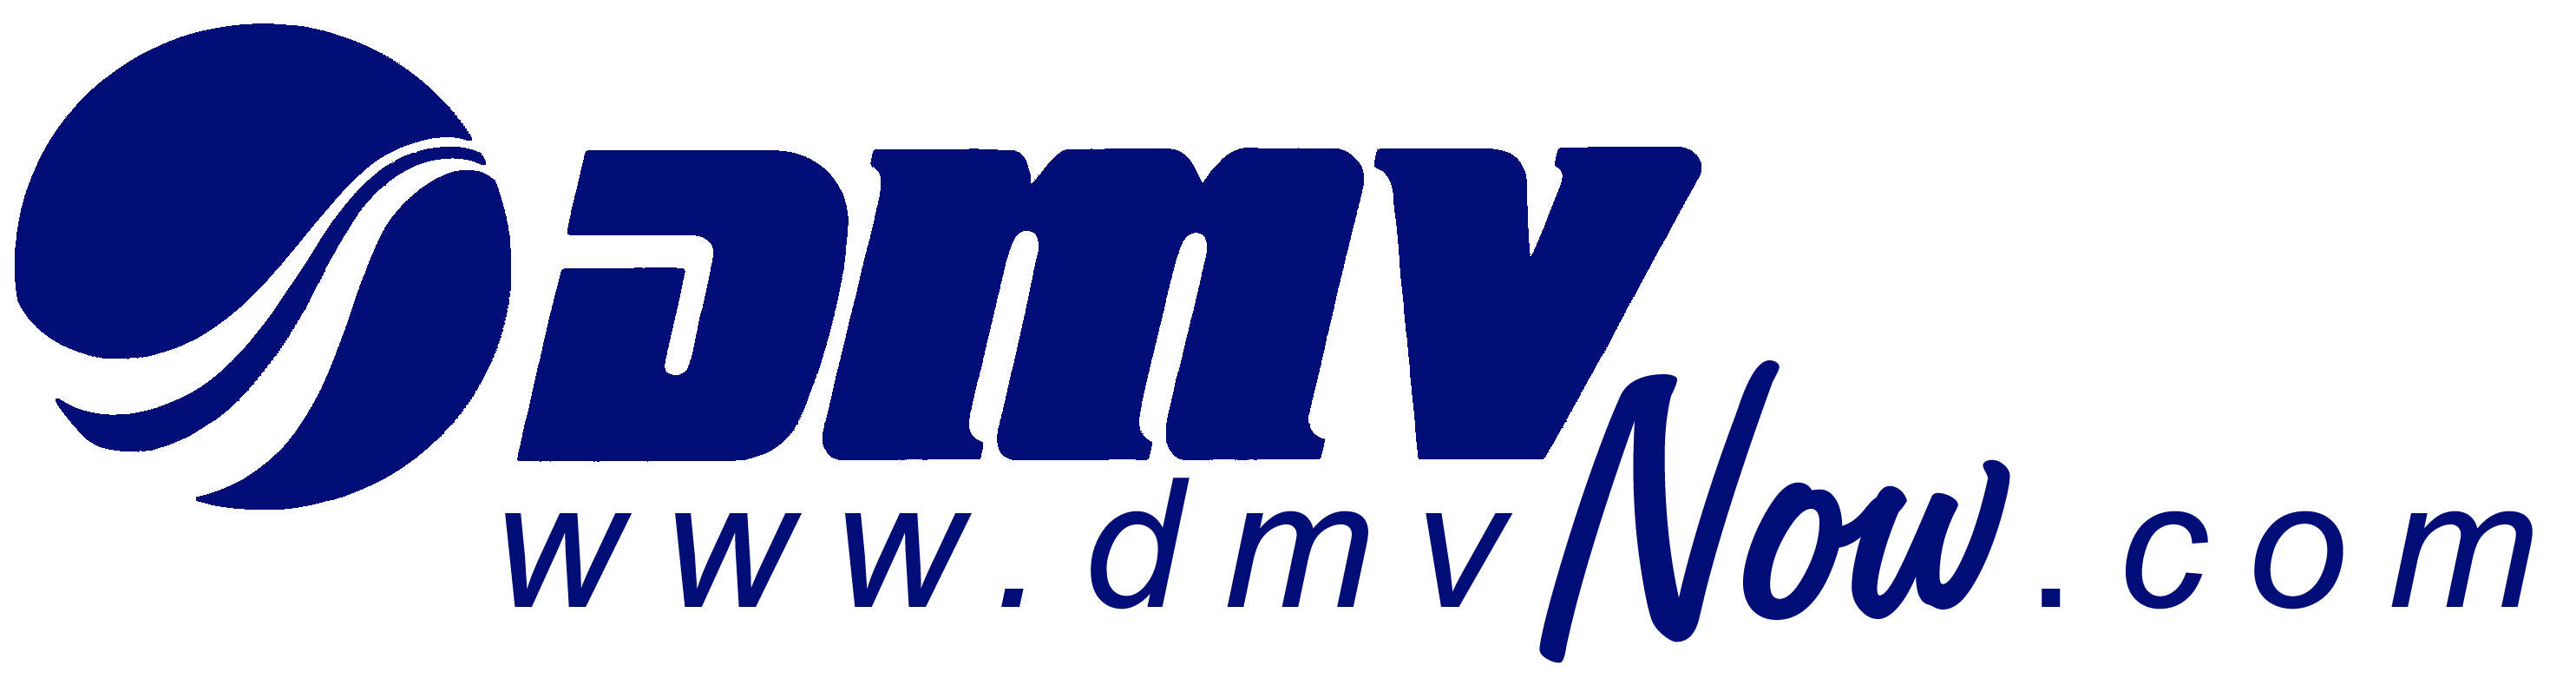 DMV Logo - Virginia DMV logo transparent